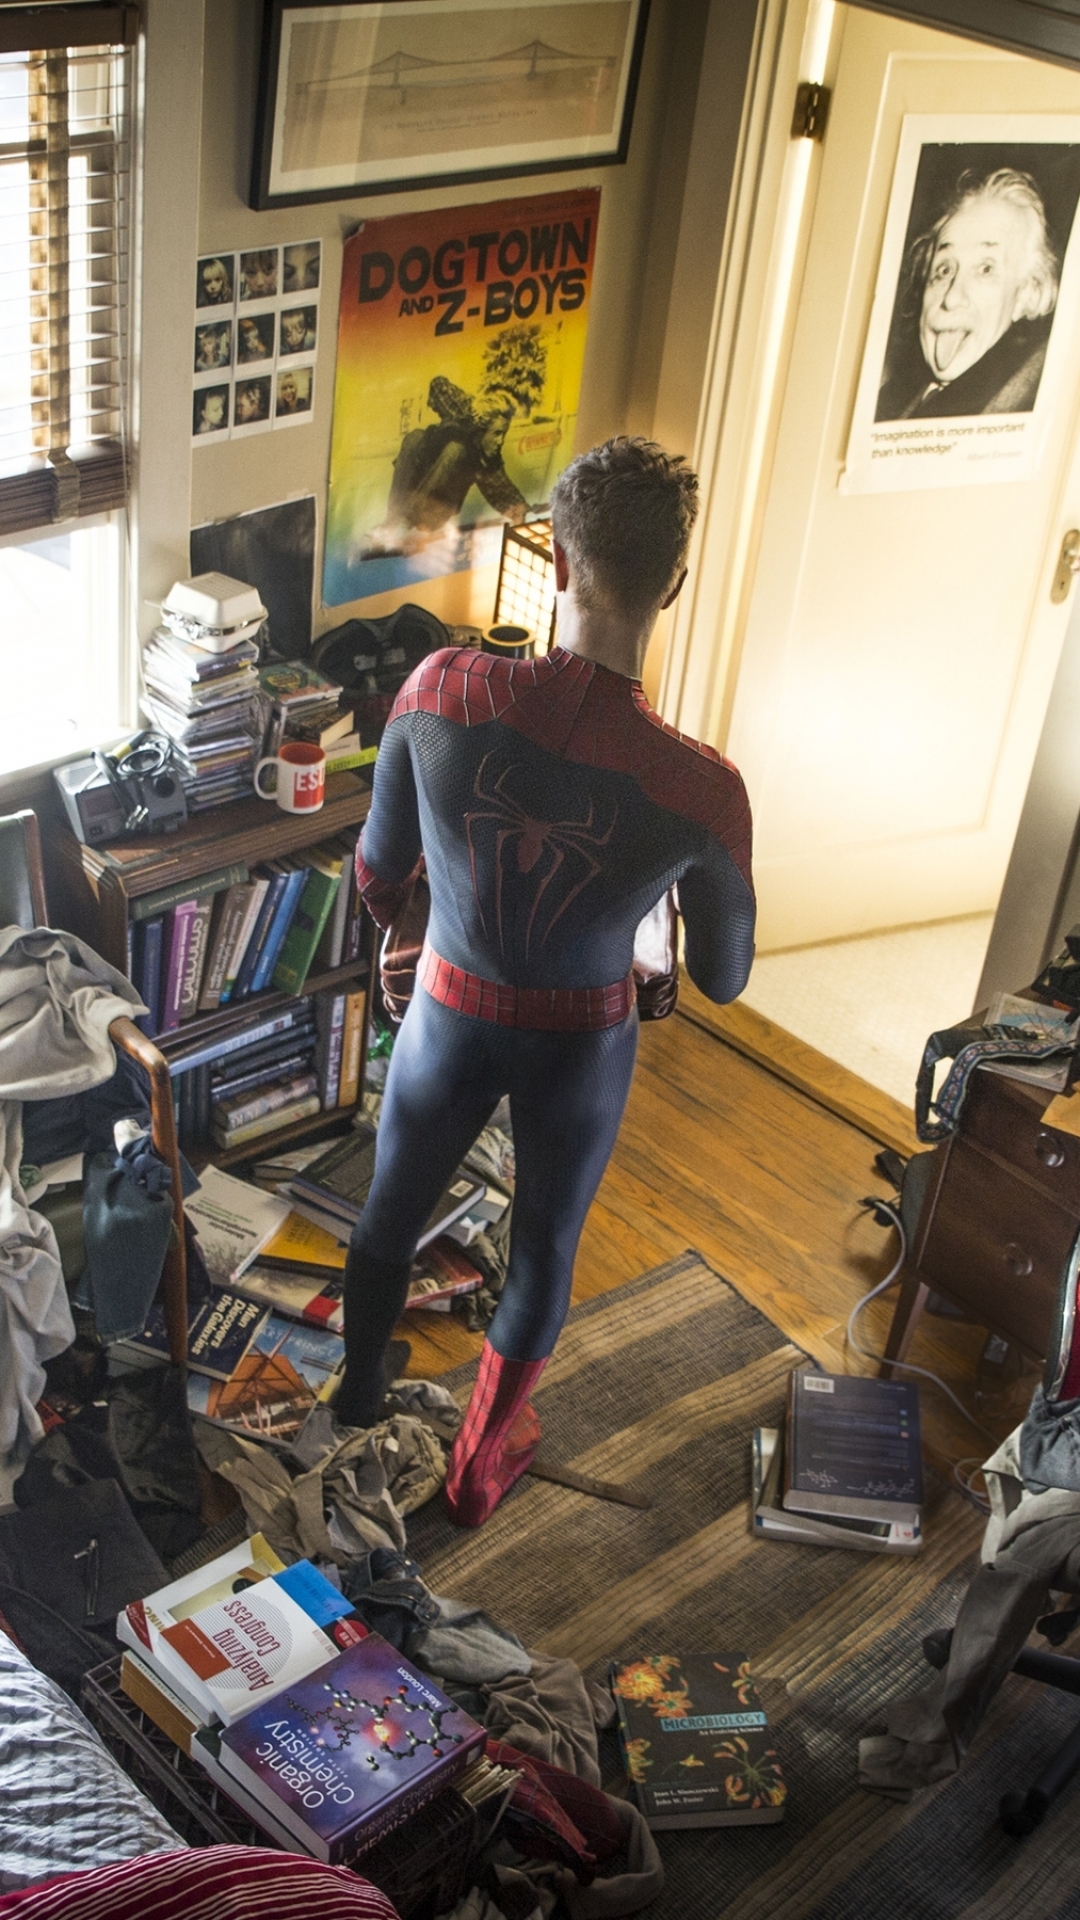 Handy-Wallpaper Filme, Spider Man, The Amazing Spider Man 2: Rise Of Electro kostenlos herunterladen.